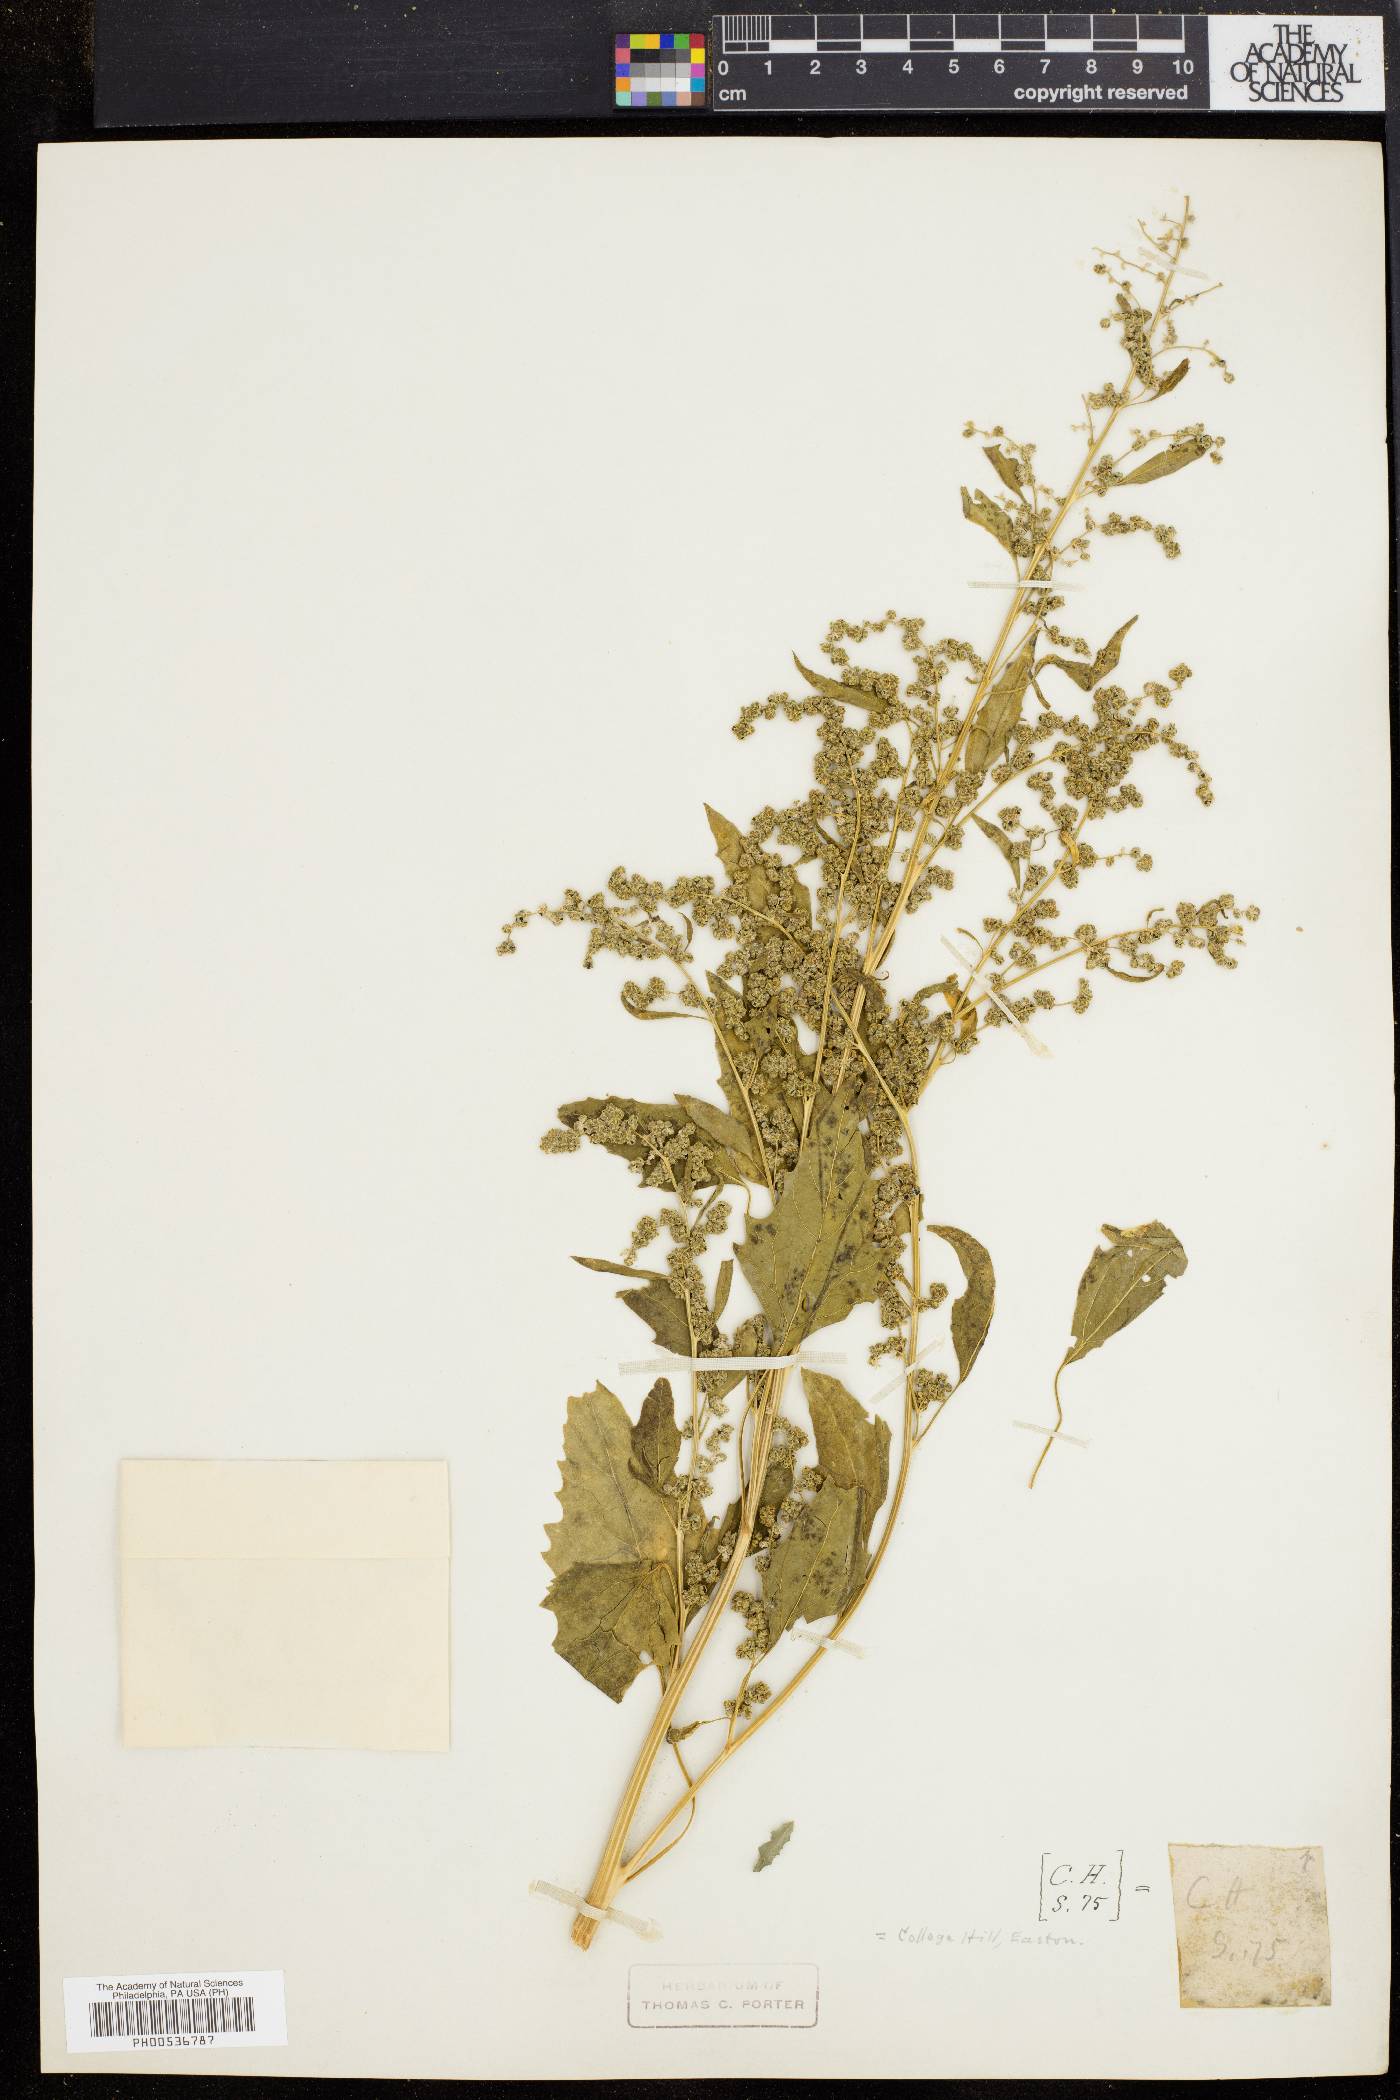 Chenopodium bushianum image